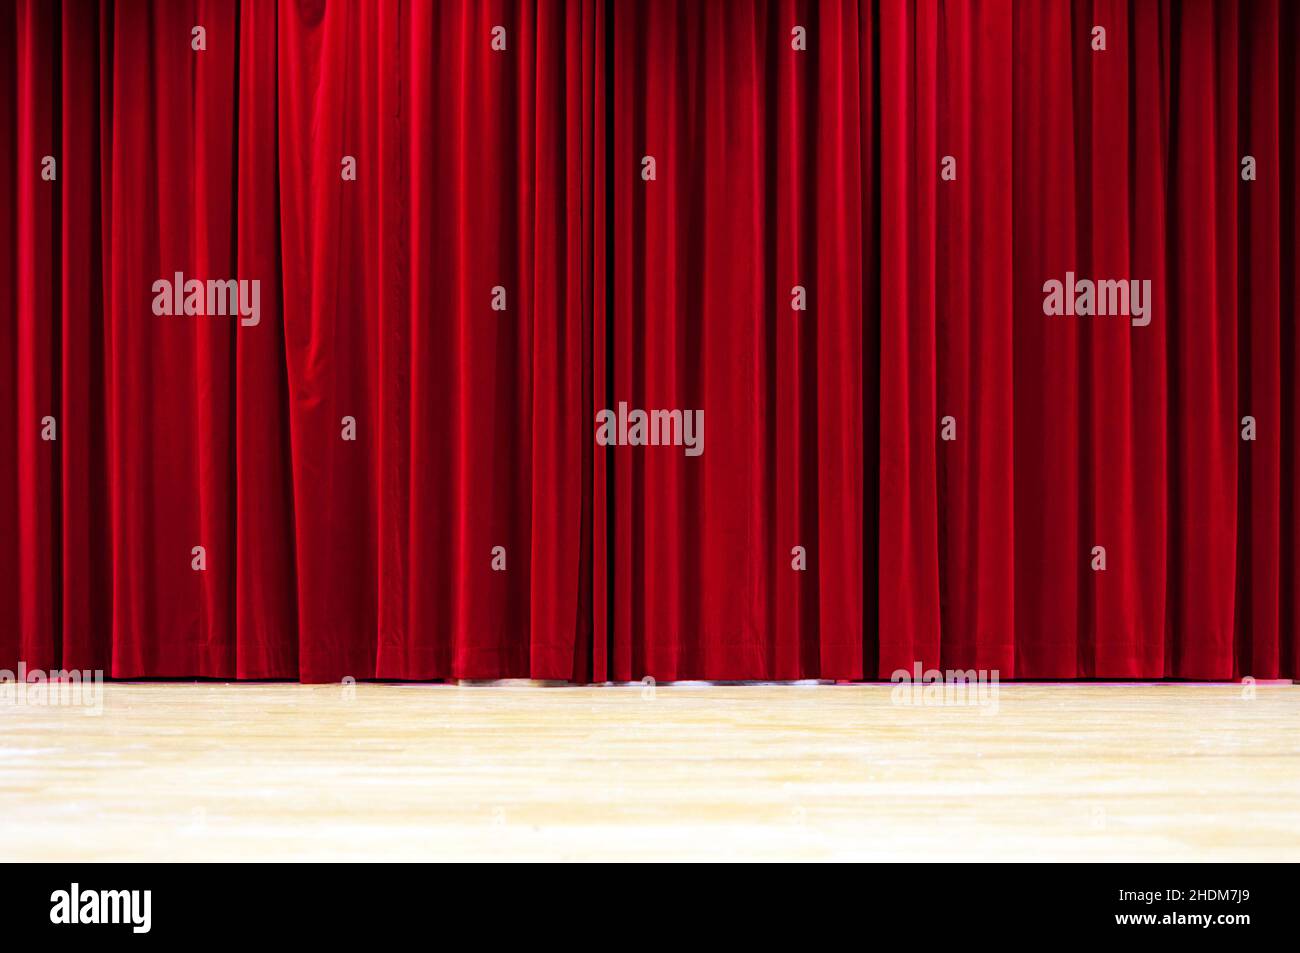 Bühne, Vorhang, Theater, Bühnen, Vorhänge, Drape, Theater, Theater, Theater Stockfoto